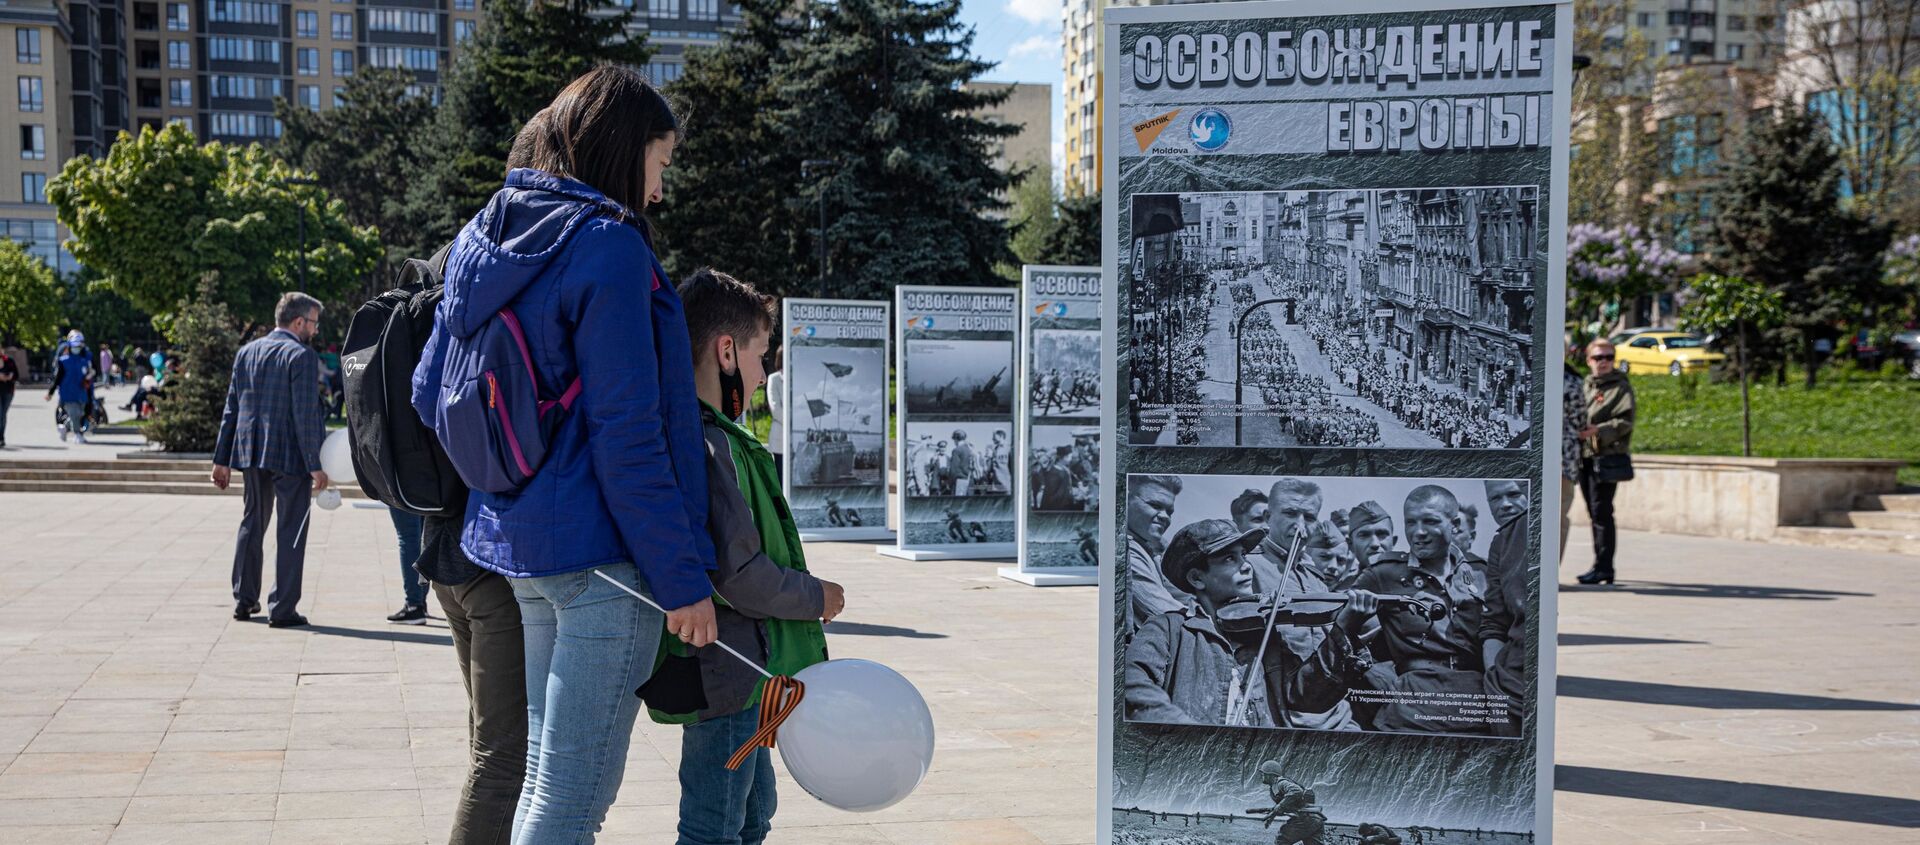 Фотовыставка Освобождение Европы в Кишиневе - Sputnik Молдова, 1920, 09.05.2021